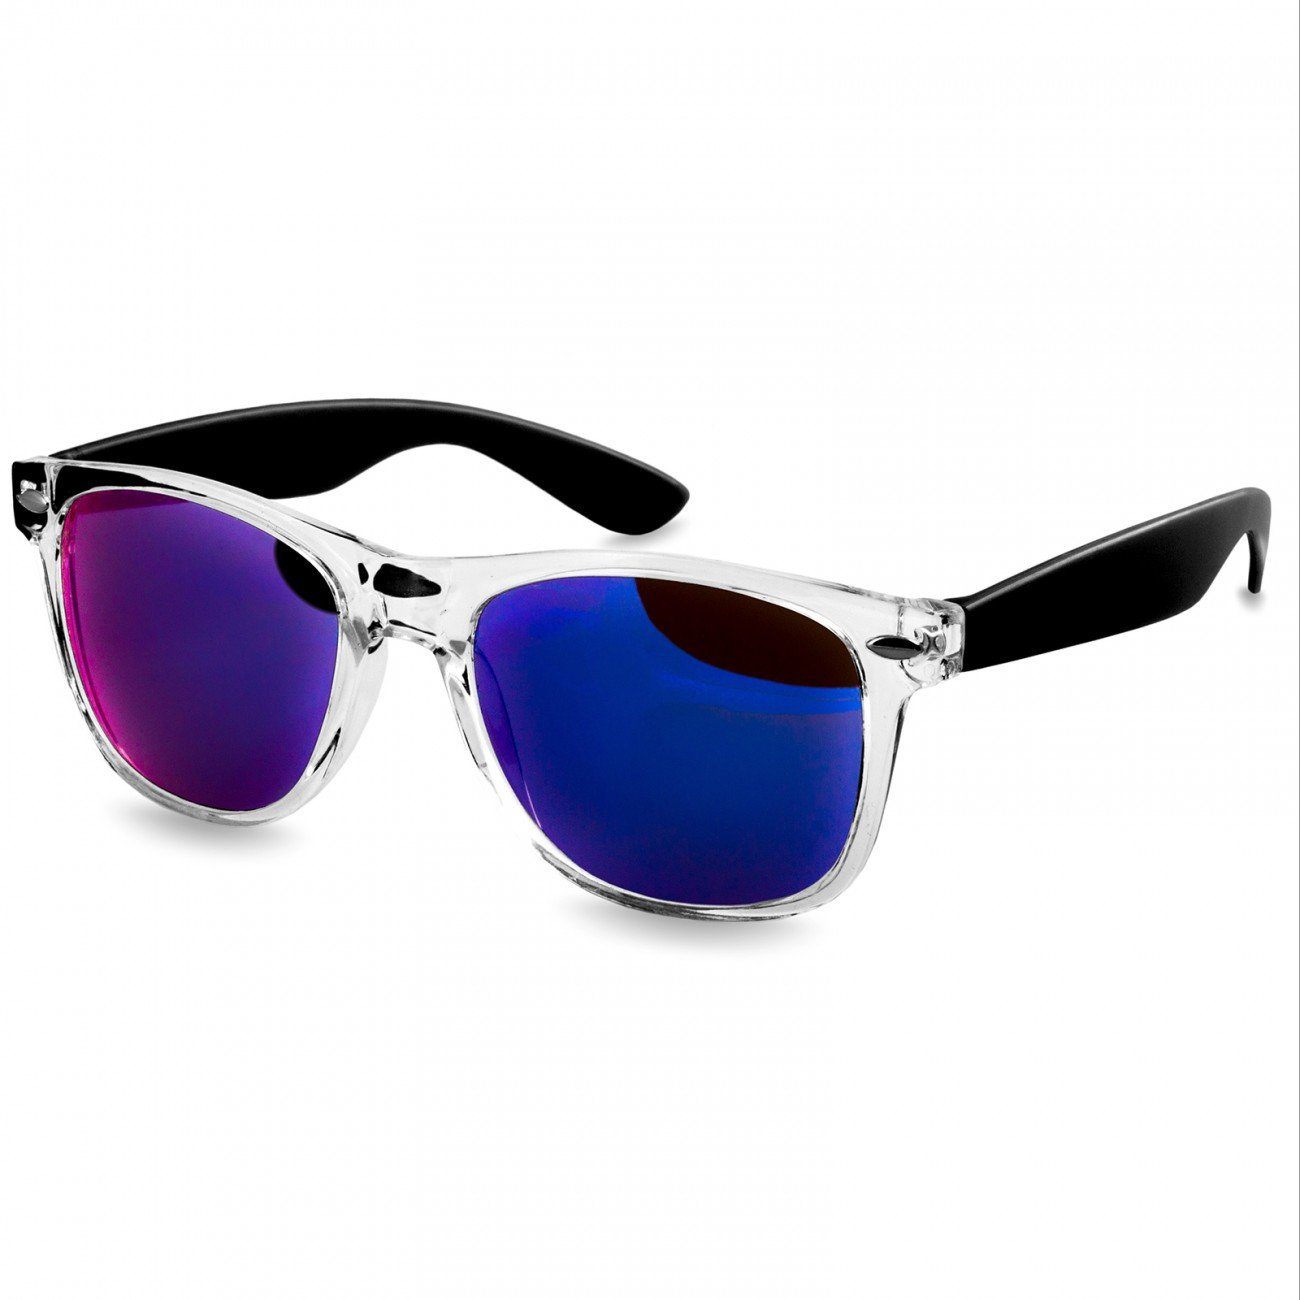 Caspar Sonnenbrille SG017 Damen RETRO Designbrille schwarz / blau verspiegelt